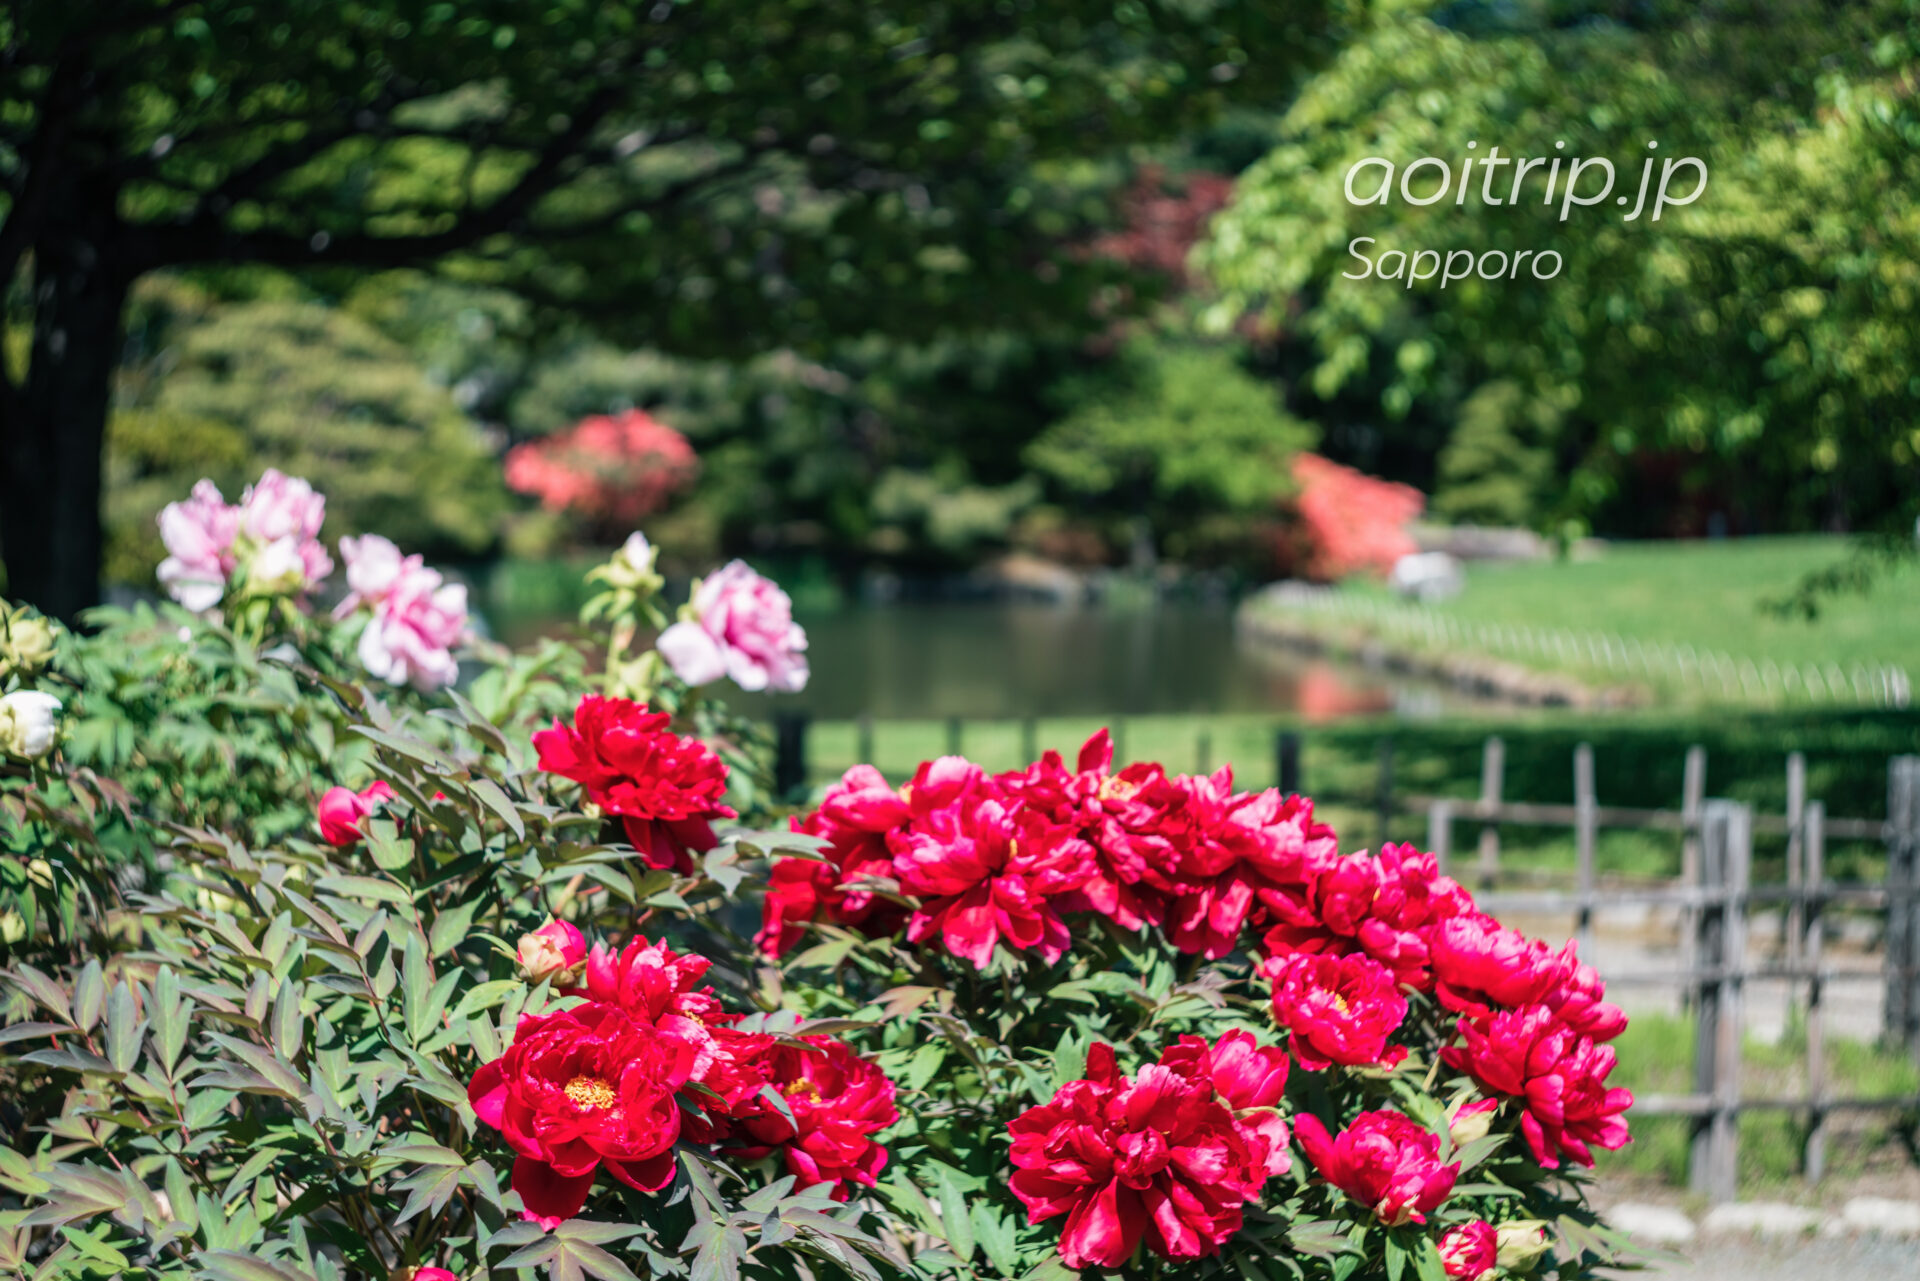 中島公園の日本庭園に咲く牡丹の花